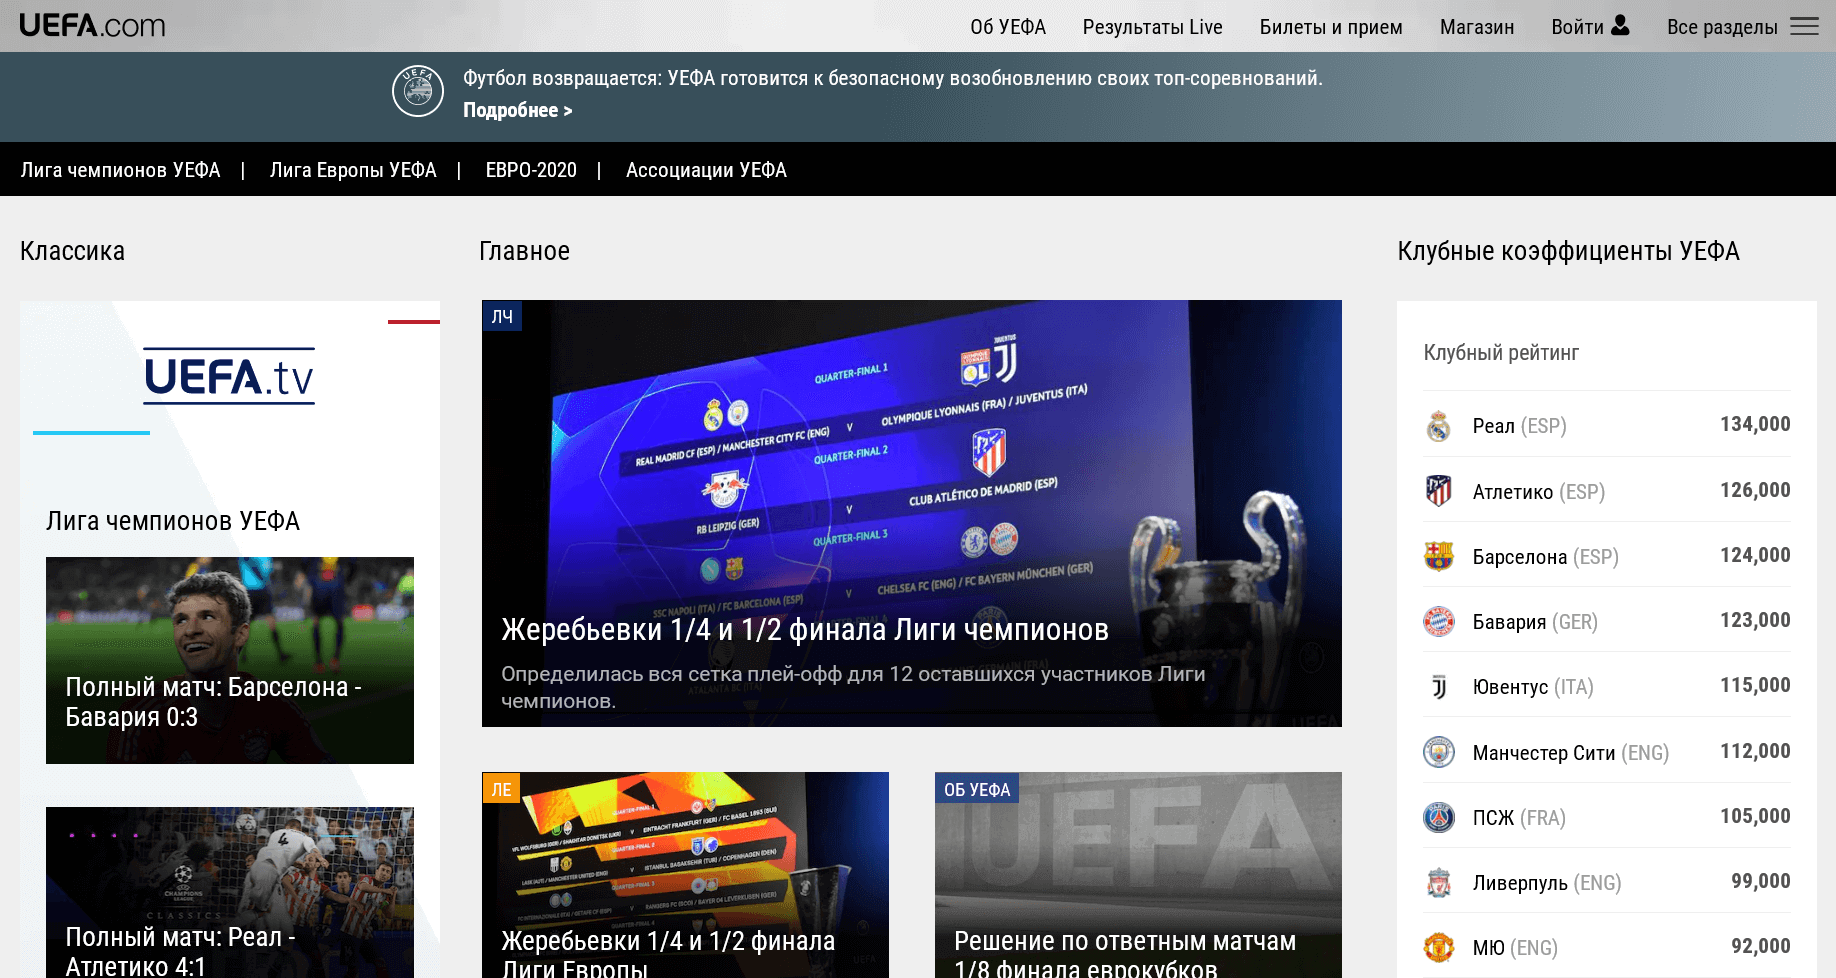 Что предлагает сайт UEFA.com